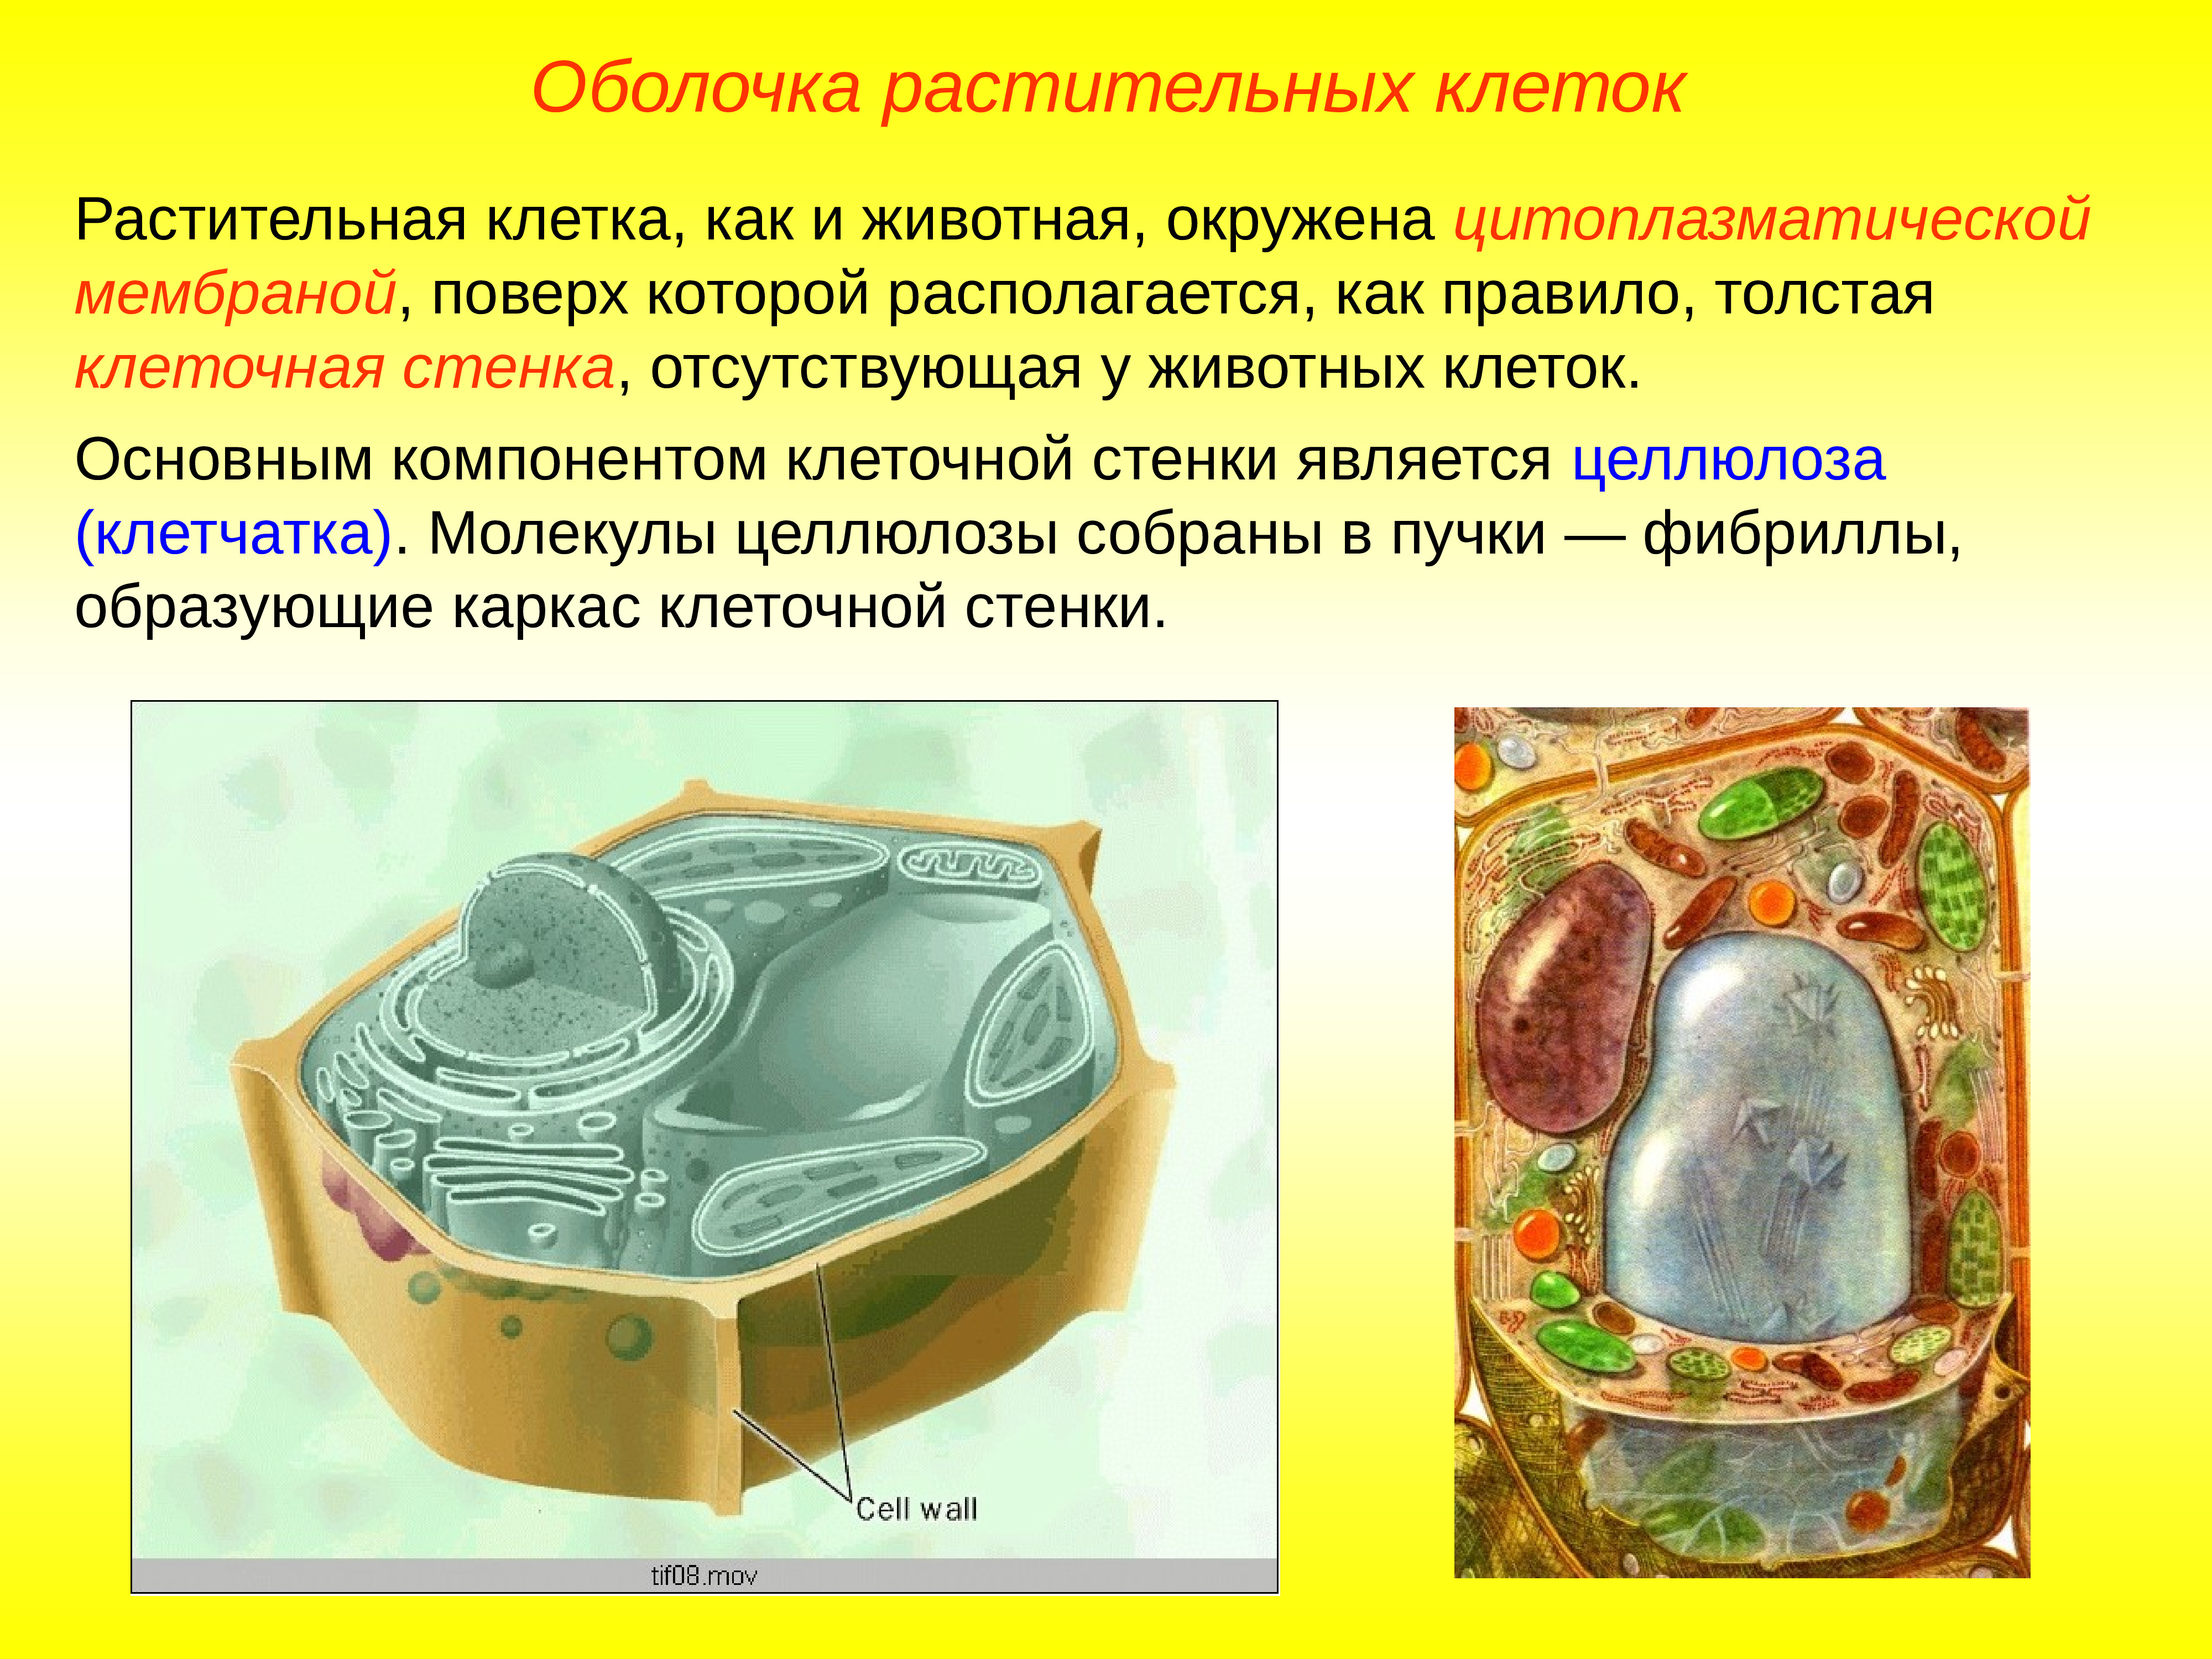 Плазмодесмы растительной клетки